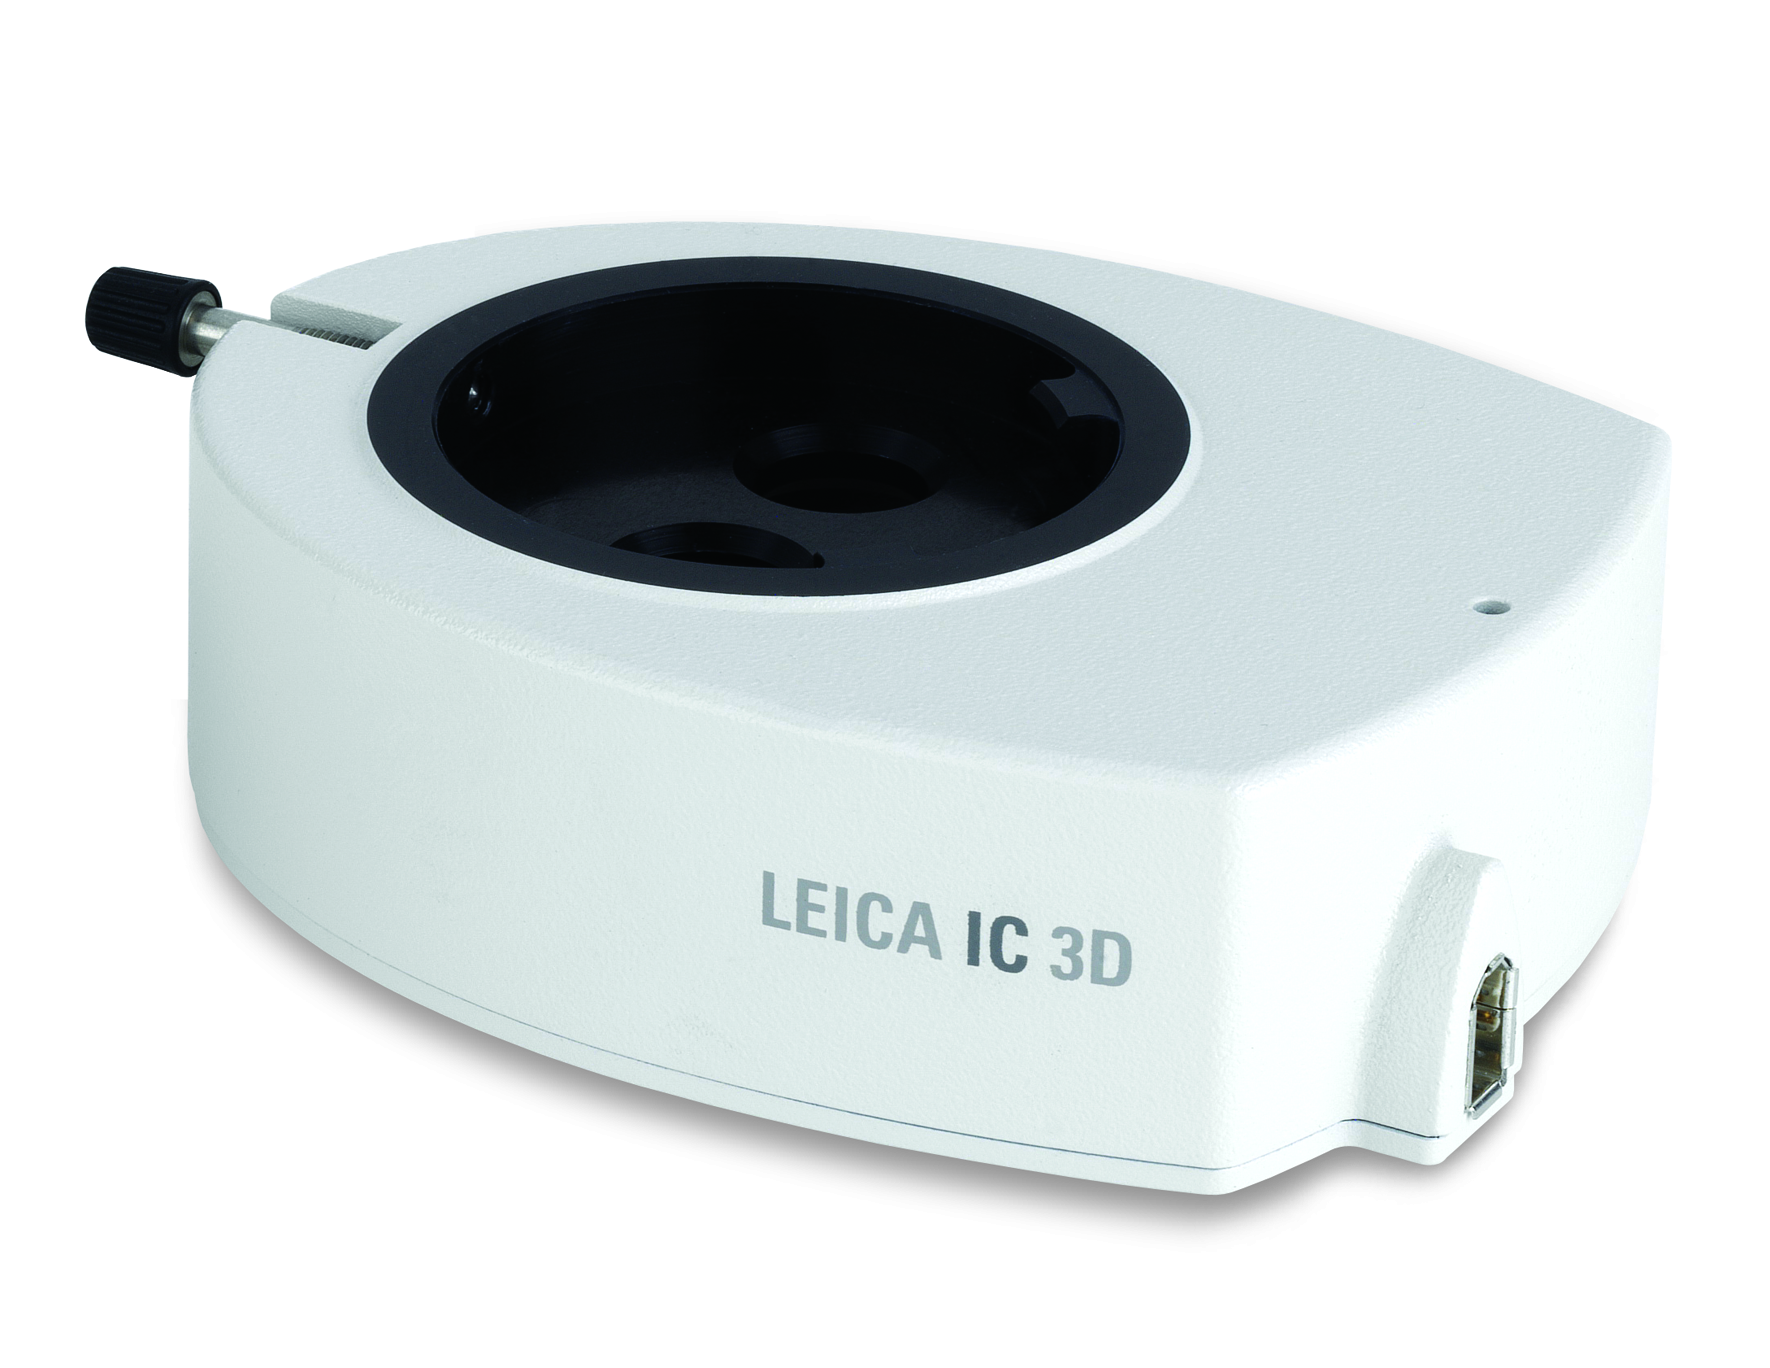 Con la cámara Leica IC 3D, obtener una imagen completa en 3D de muestras microscópicas y observarlas a través de los oculares o de una pantalla está al alcance de la mano de cualquier usuario.